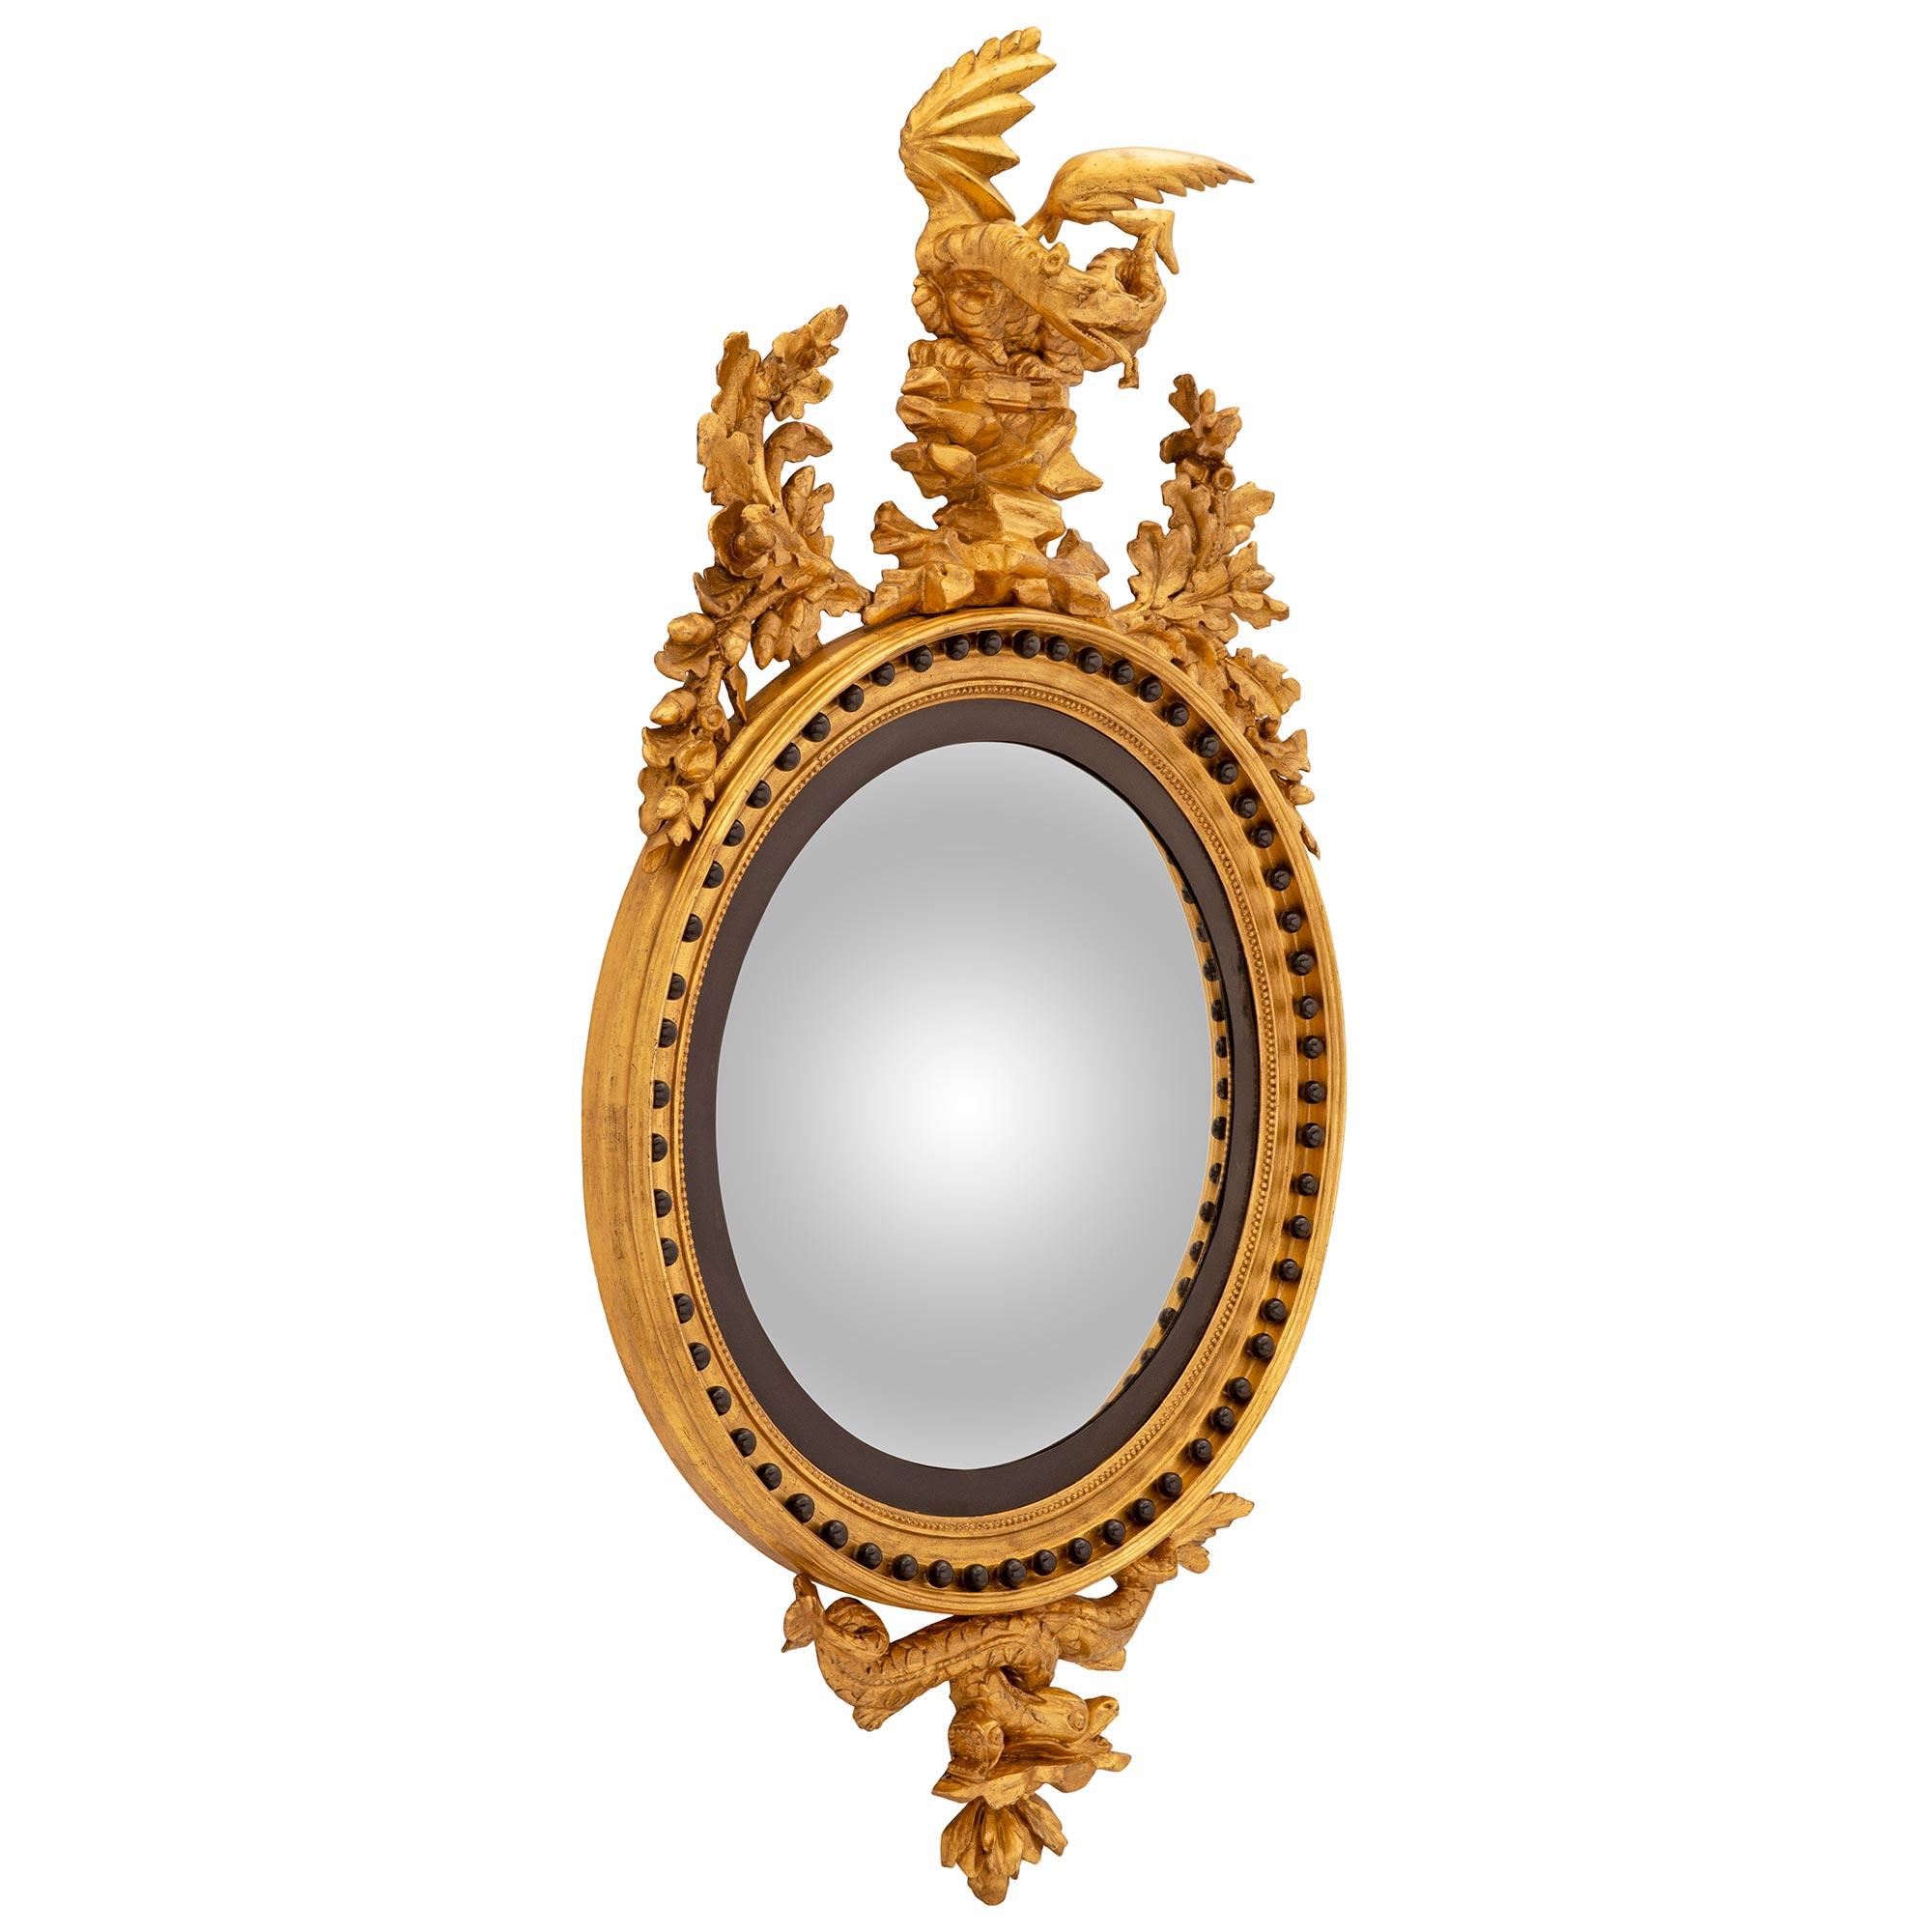 Eine atemberaubende und äußerst dekorative Englisch 19. Jahrhundert Regency st. patiniert und vergoldet konvexen Spiegel beschriftet Thomas Fentham und Co. um 1830. Der originale, runde, konvexe Spiegel ist in einen eleganten, patinierten und